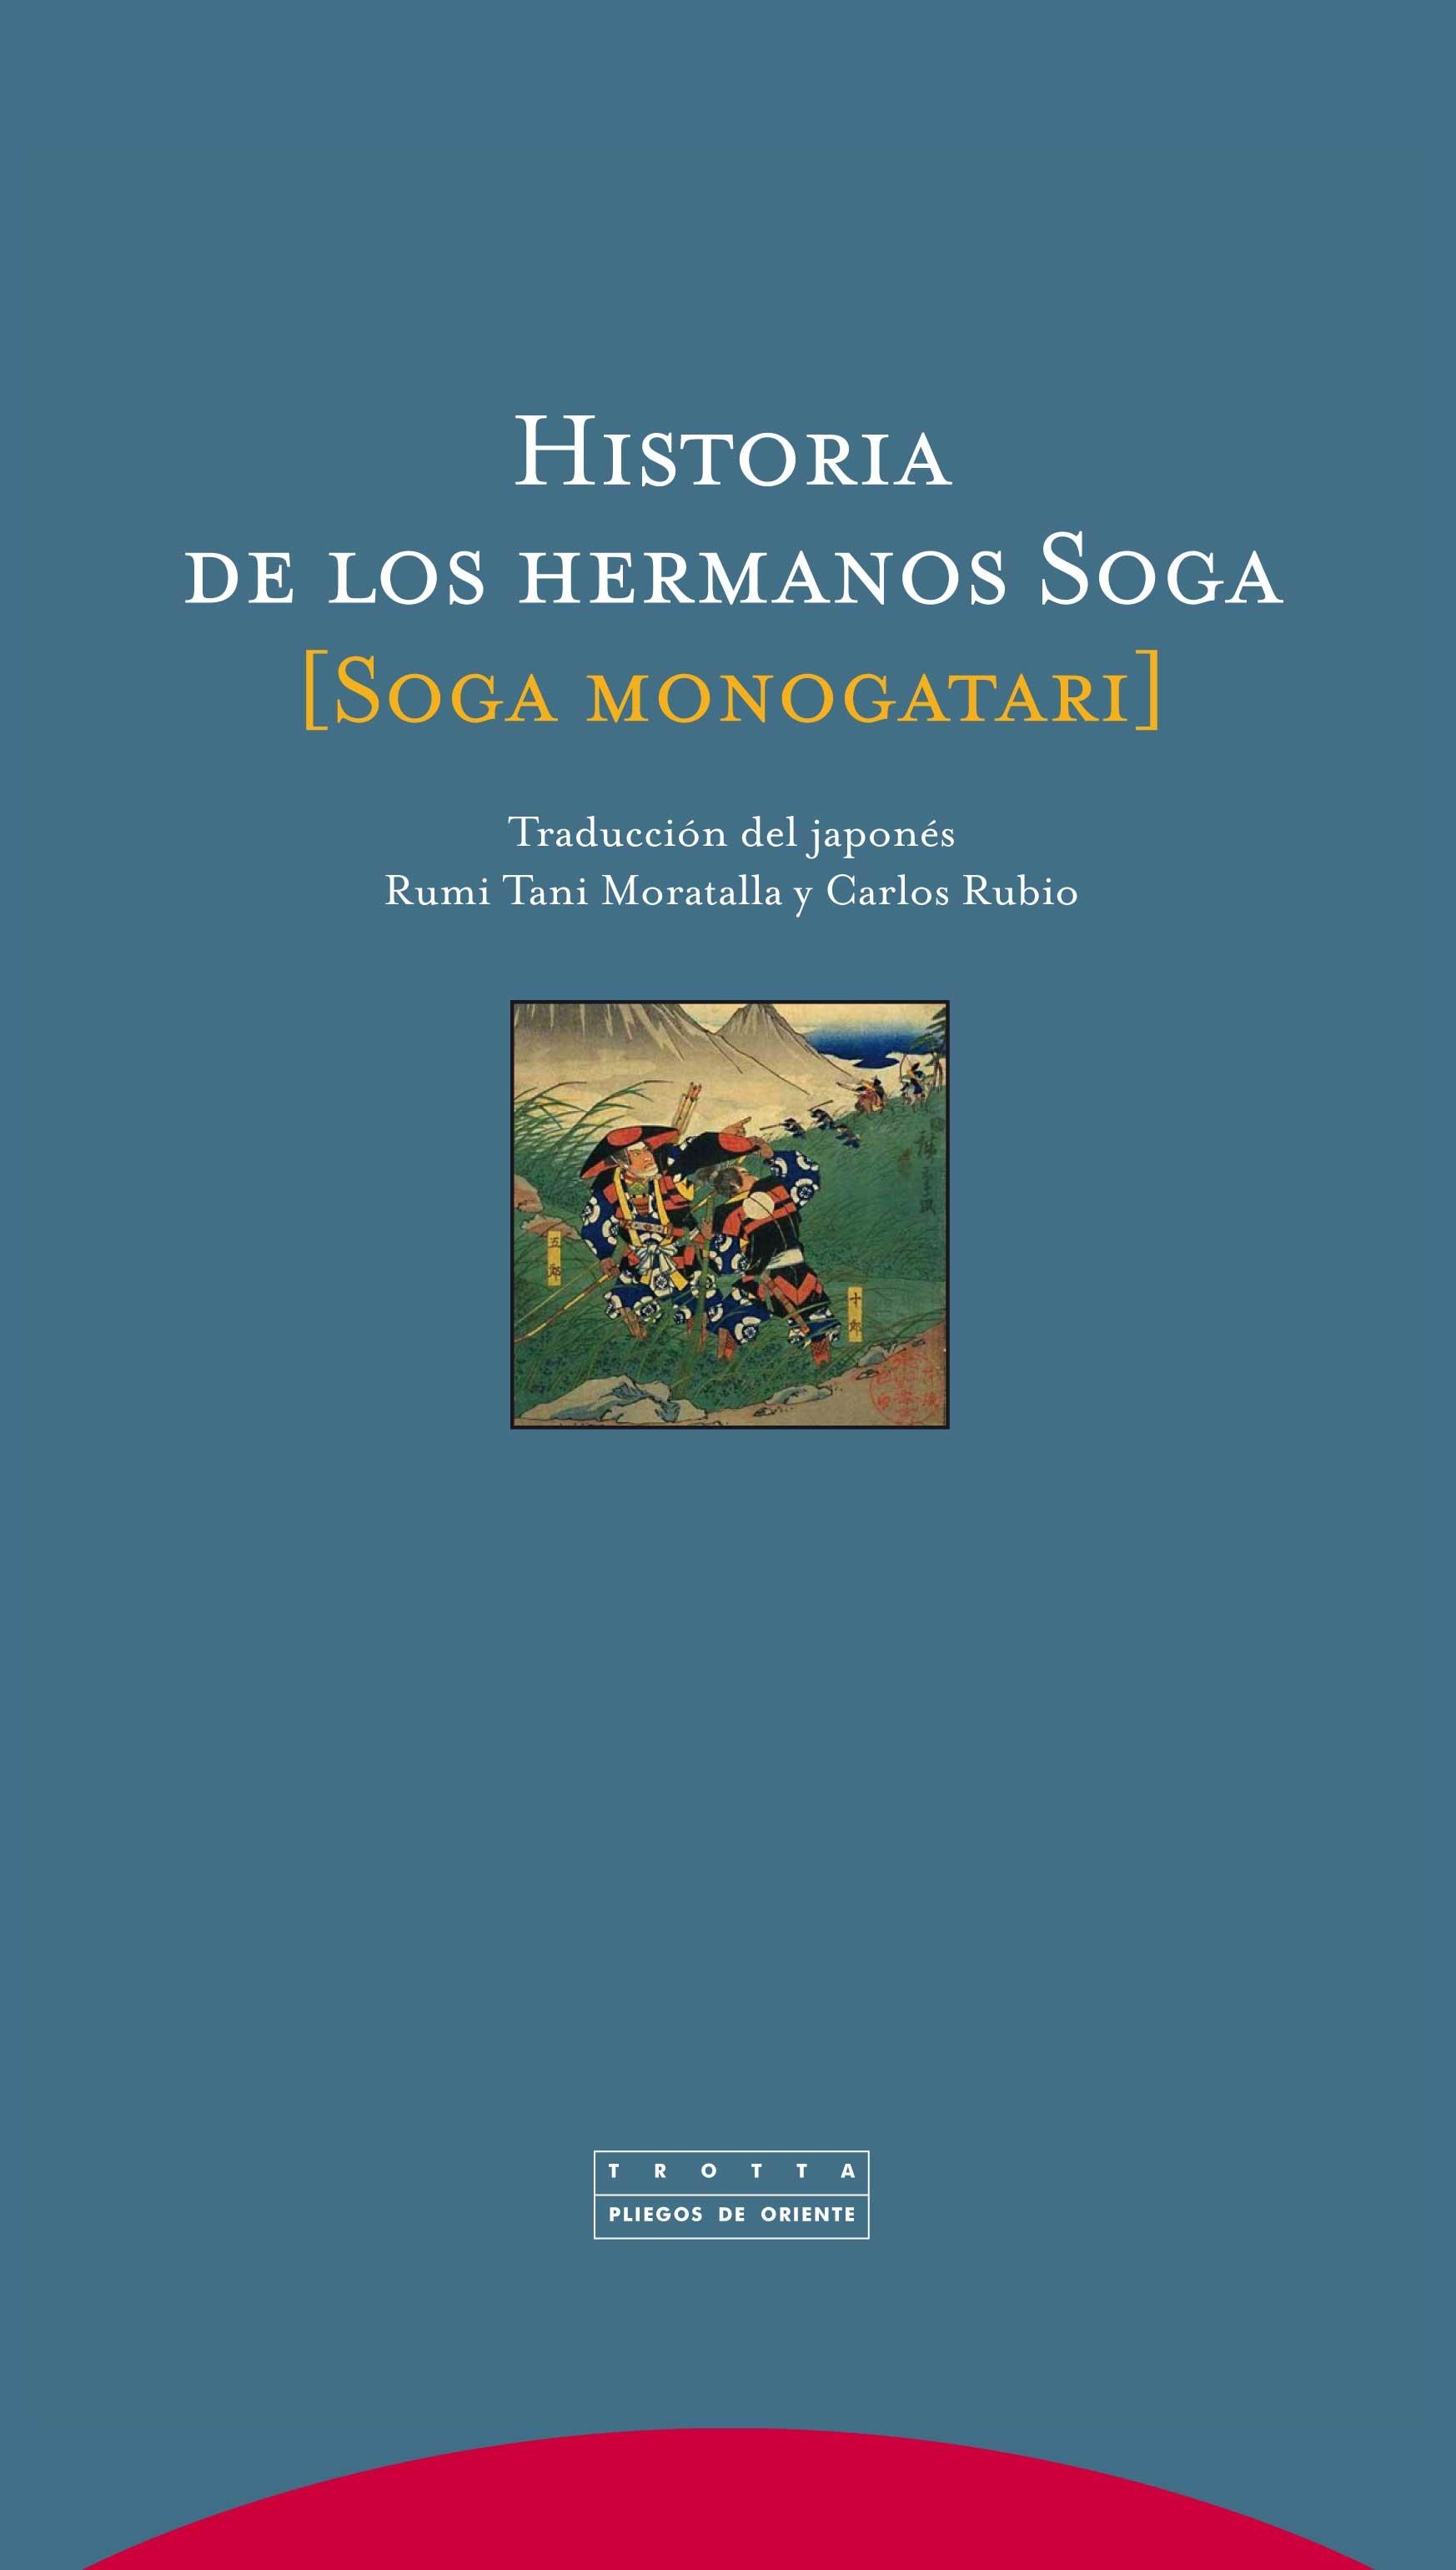 Historia de los Hermanos Soga. 